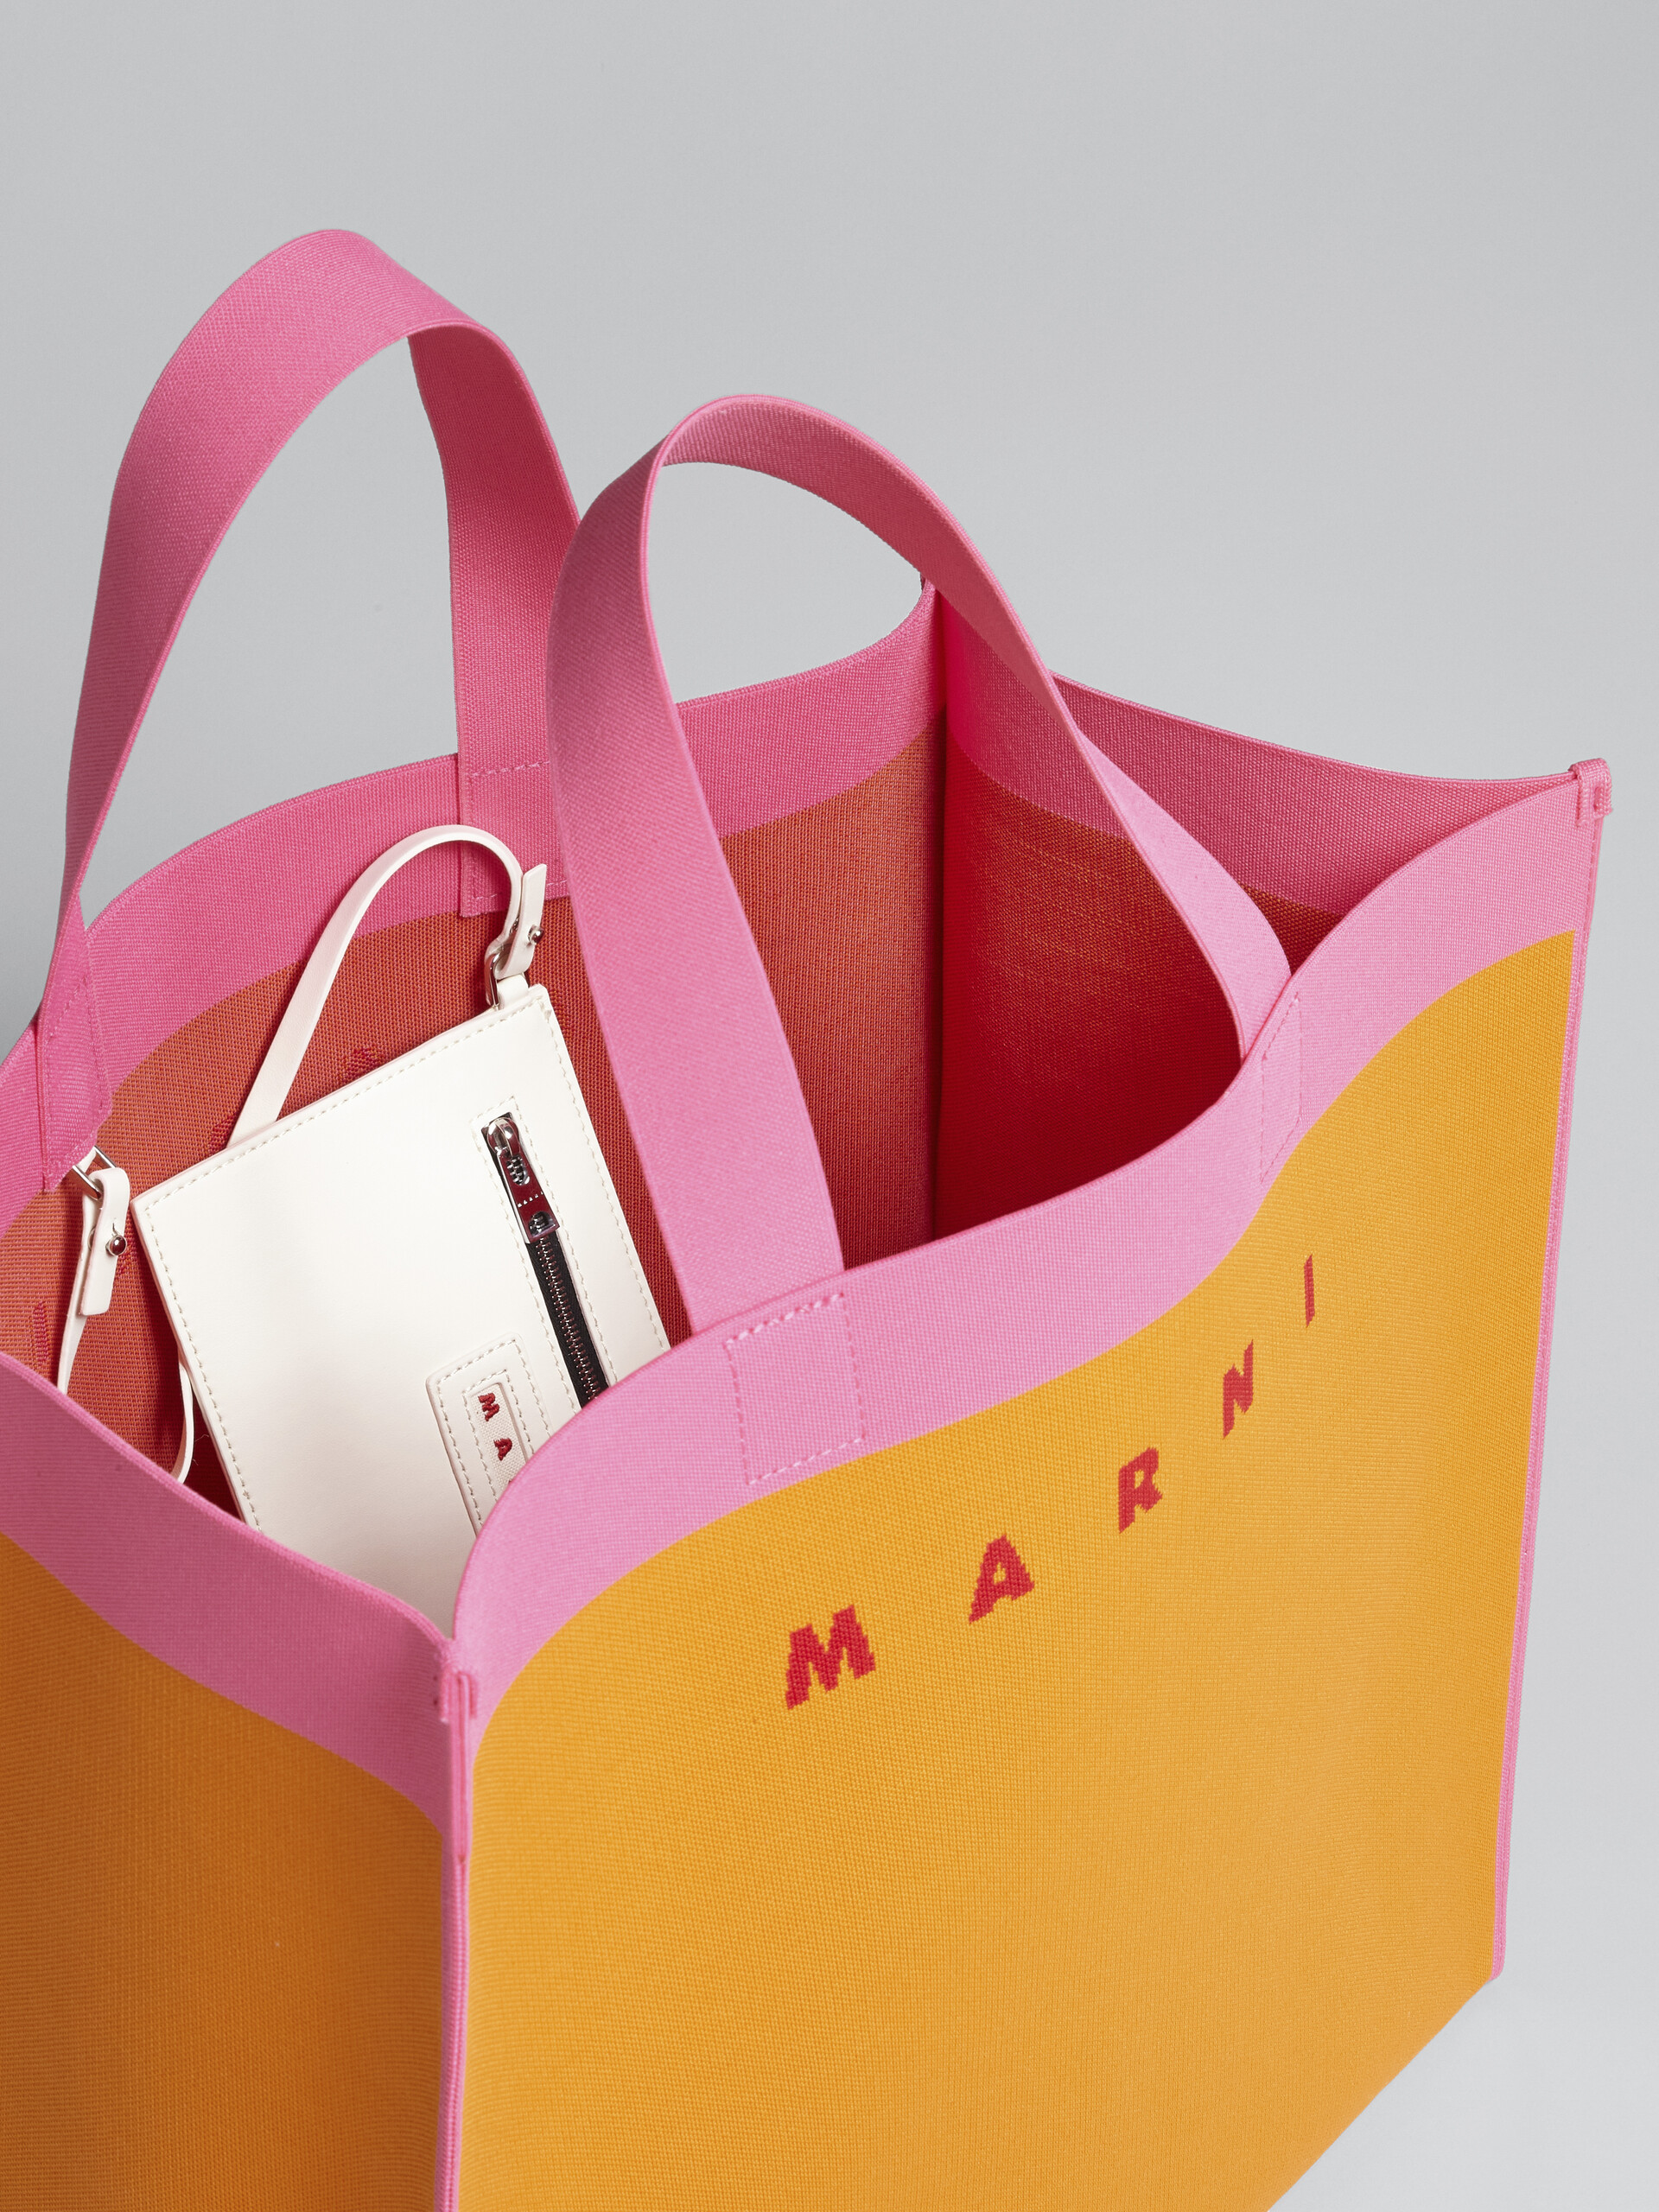 Orange and pink jacquard shopping bag - Shopping Bags - Image 4